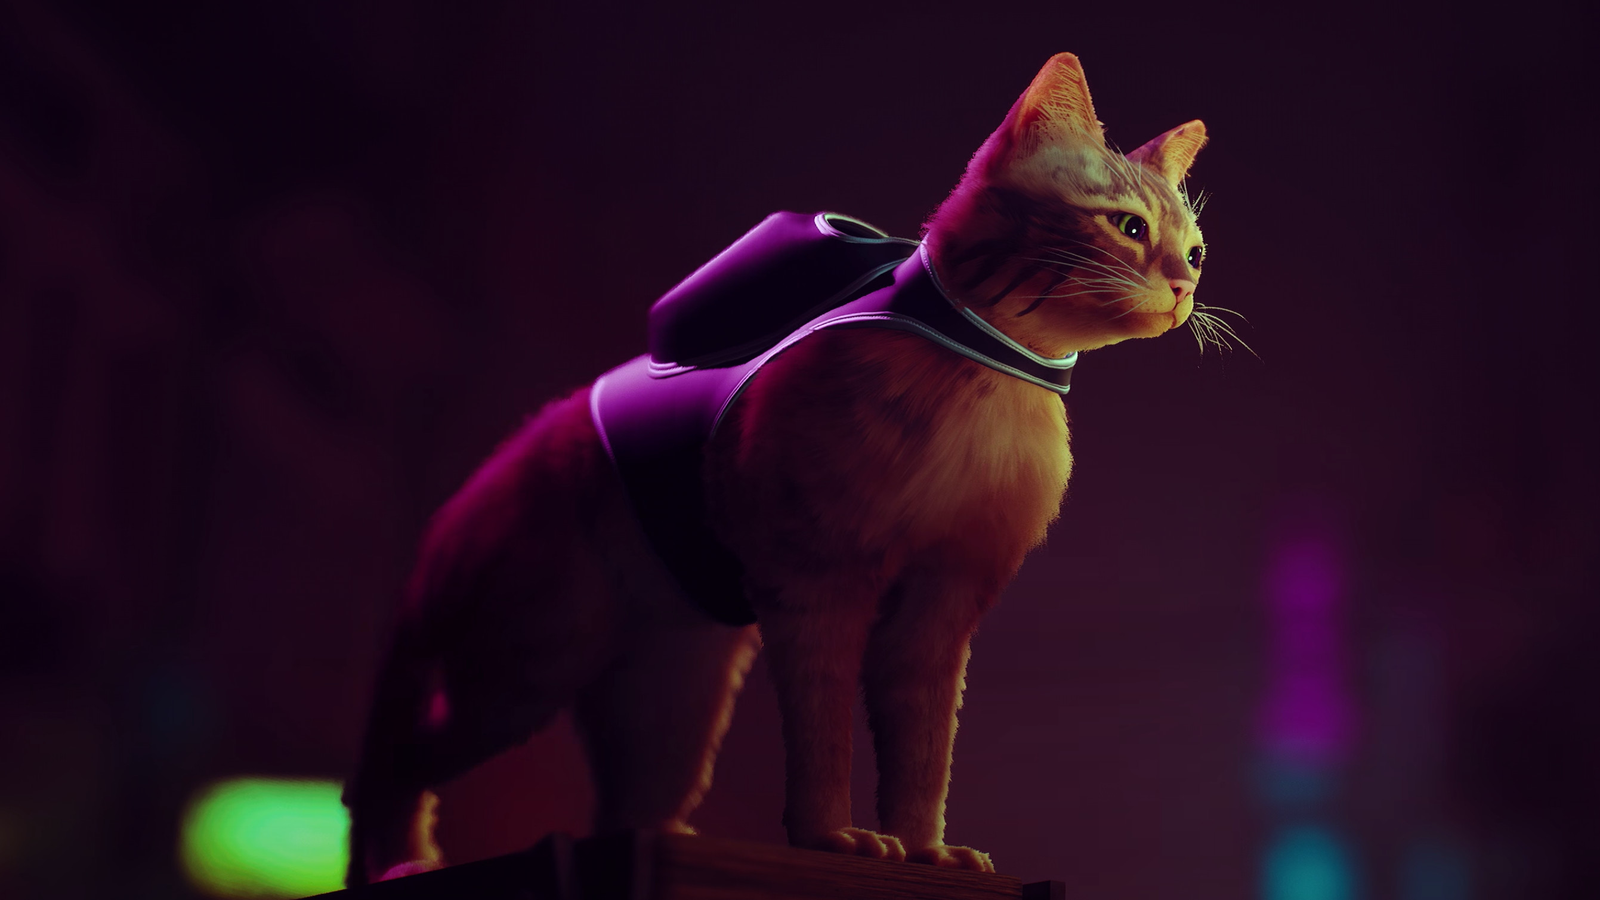 Análisis de Stray: amor felino y ciencia ficción en 'el juego del gato